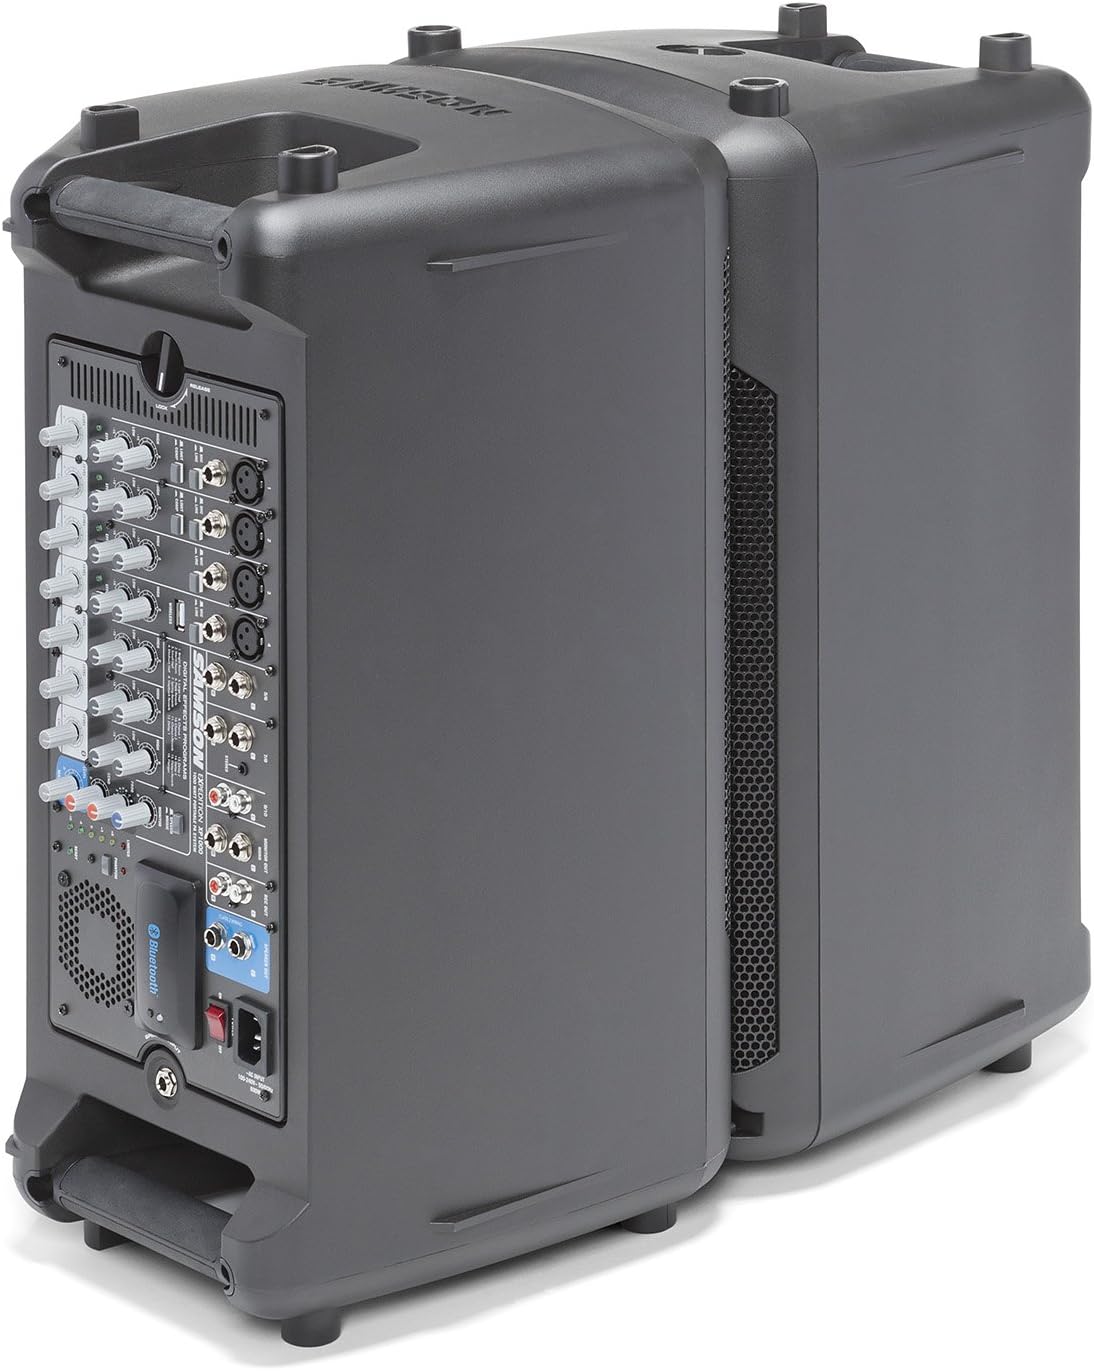 Samson SAXP800B 800W Portable PA System